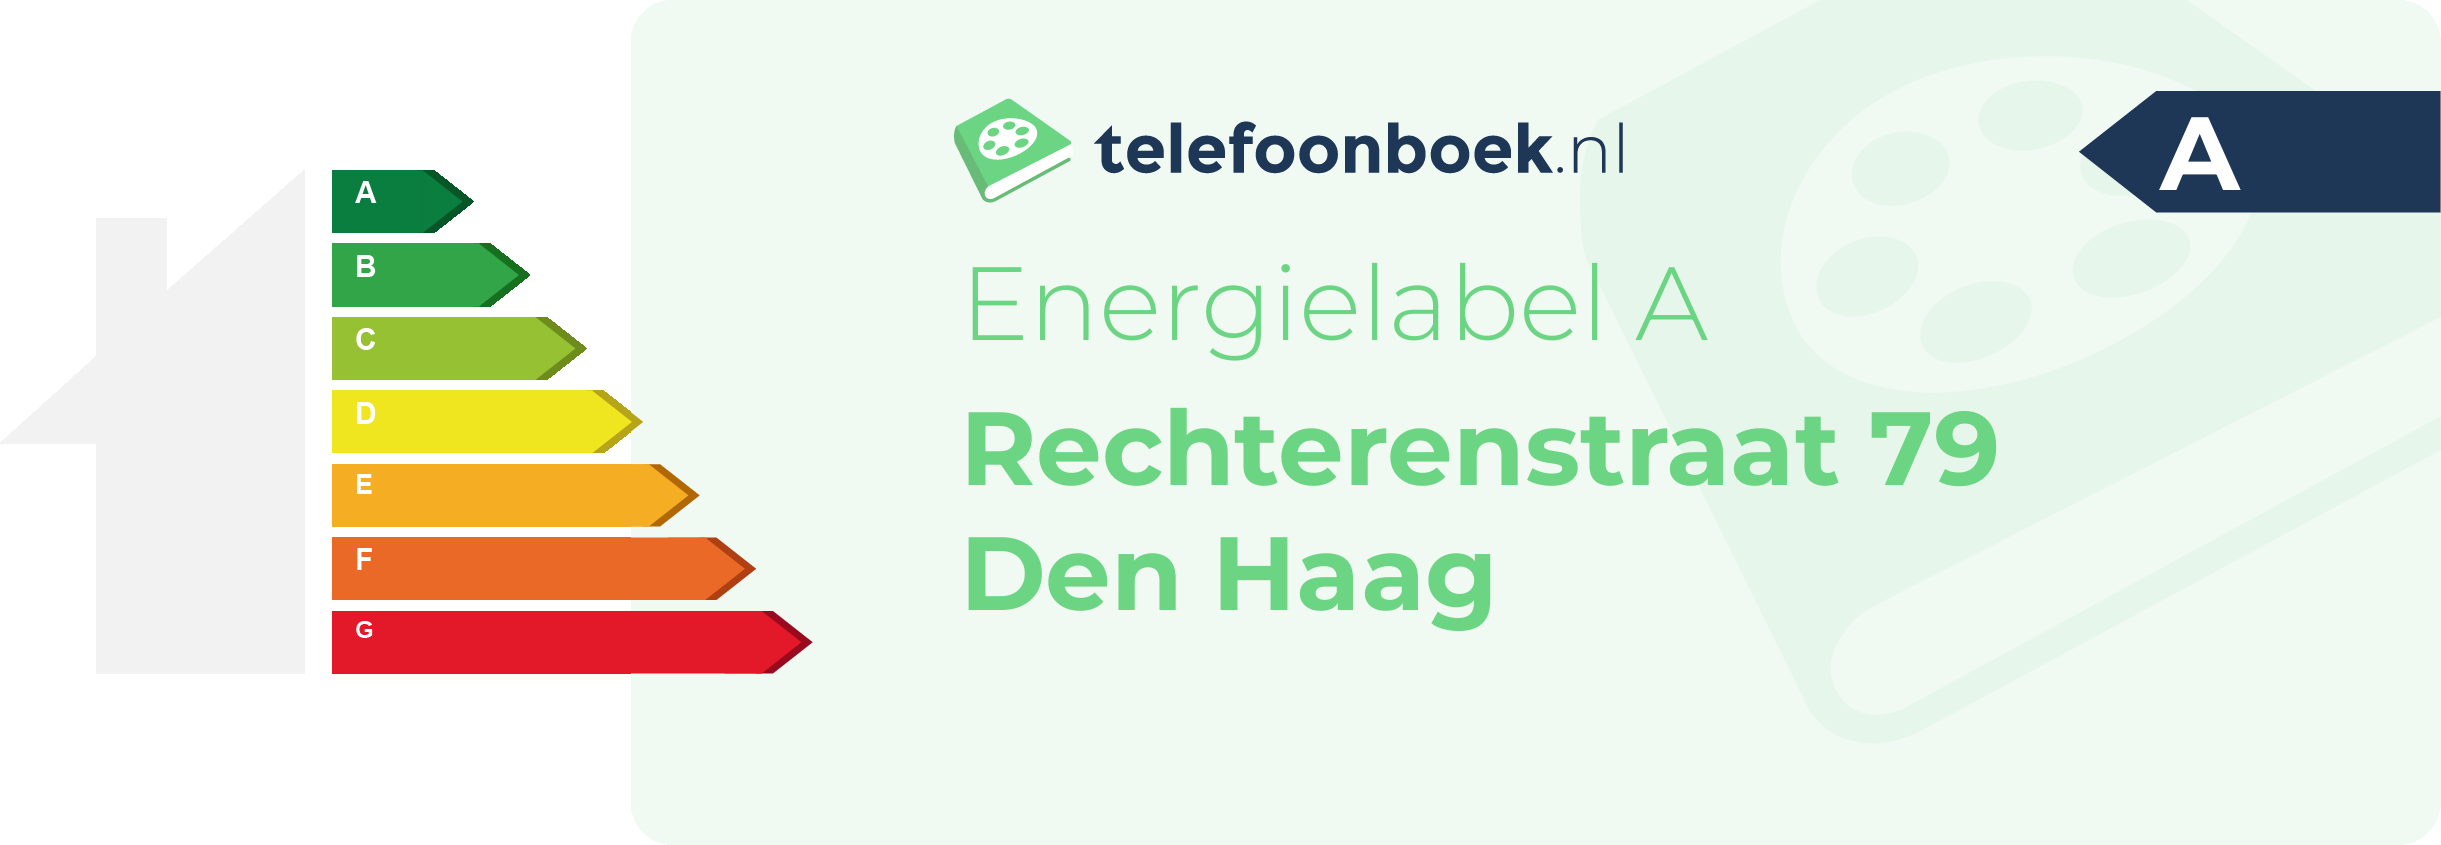 Energielabel Rechterenstraat 79 Den Haag